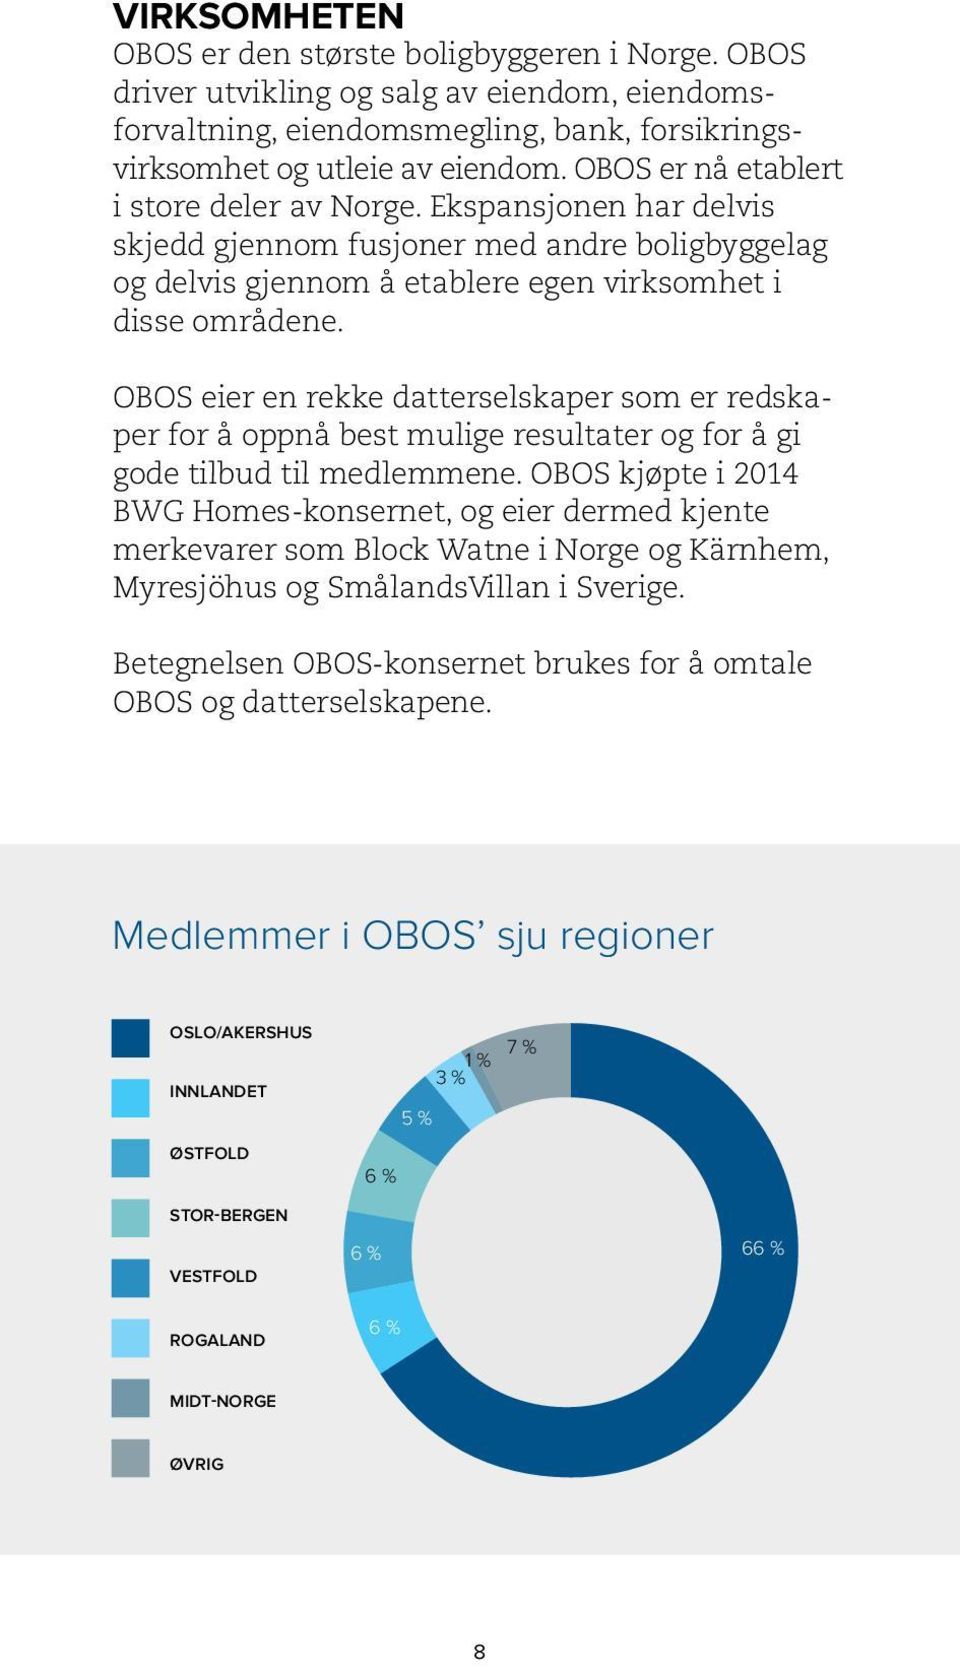 OBOS eier en rekke datterselskaper som er redskaper for å oppnå best mulige resultater og for å gi gode tilbud til medlemmene.